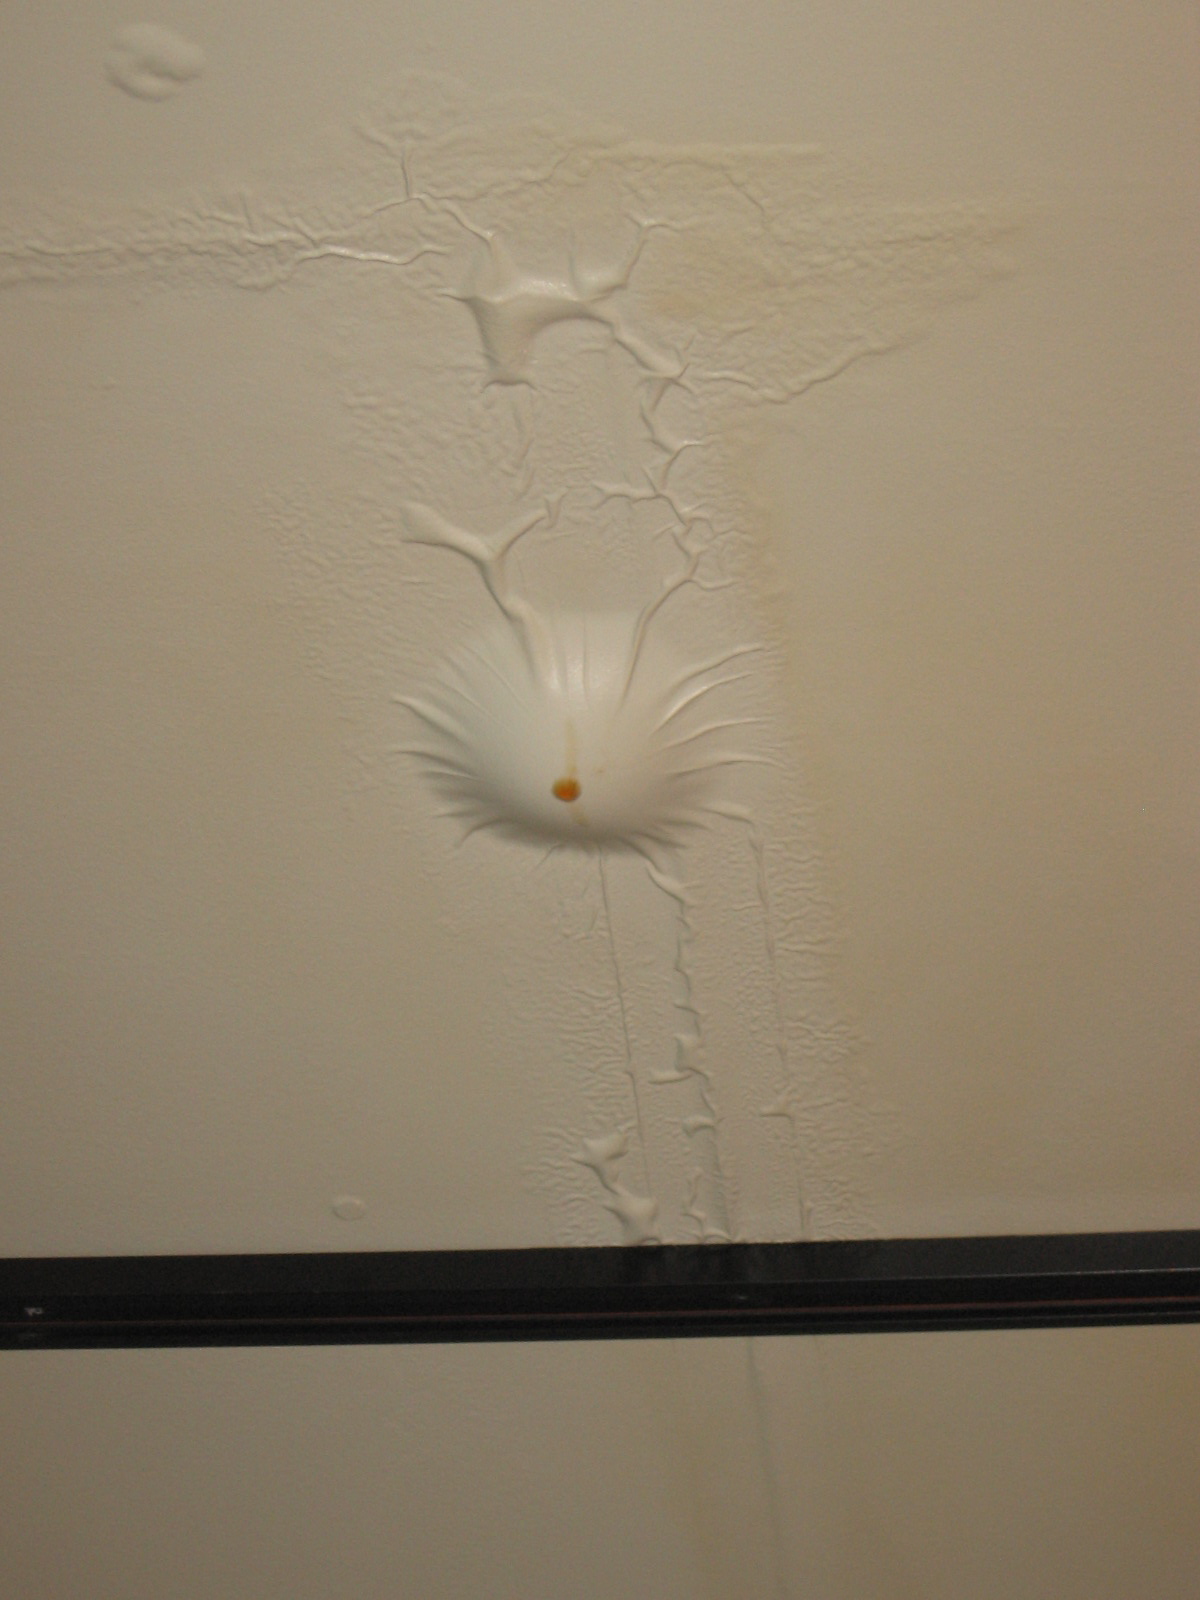 Сон капала вода с потолка. Пузырь на натяжном потолке. Натяжной потолок протечка. Вода в натяжном потолке. Вздутие натяжного потолка.